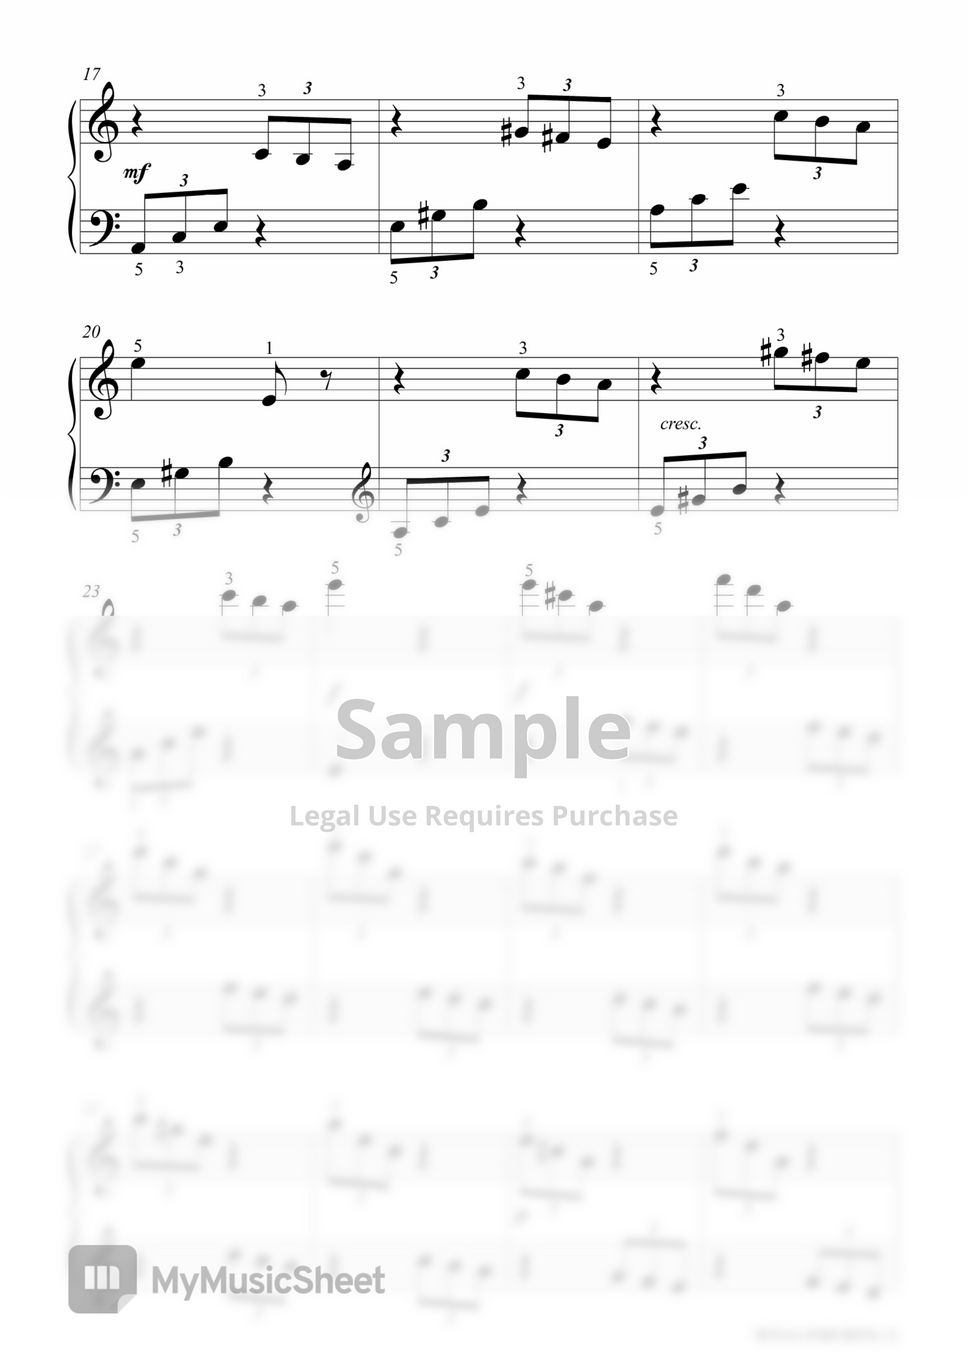 베르코비치 - 파가니니 주제에 의한 변주곡 (쉬운 악보) by 상상피아노